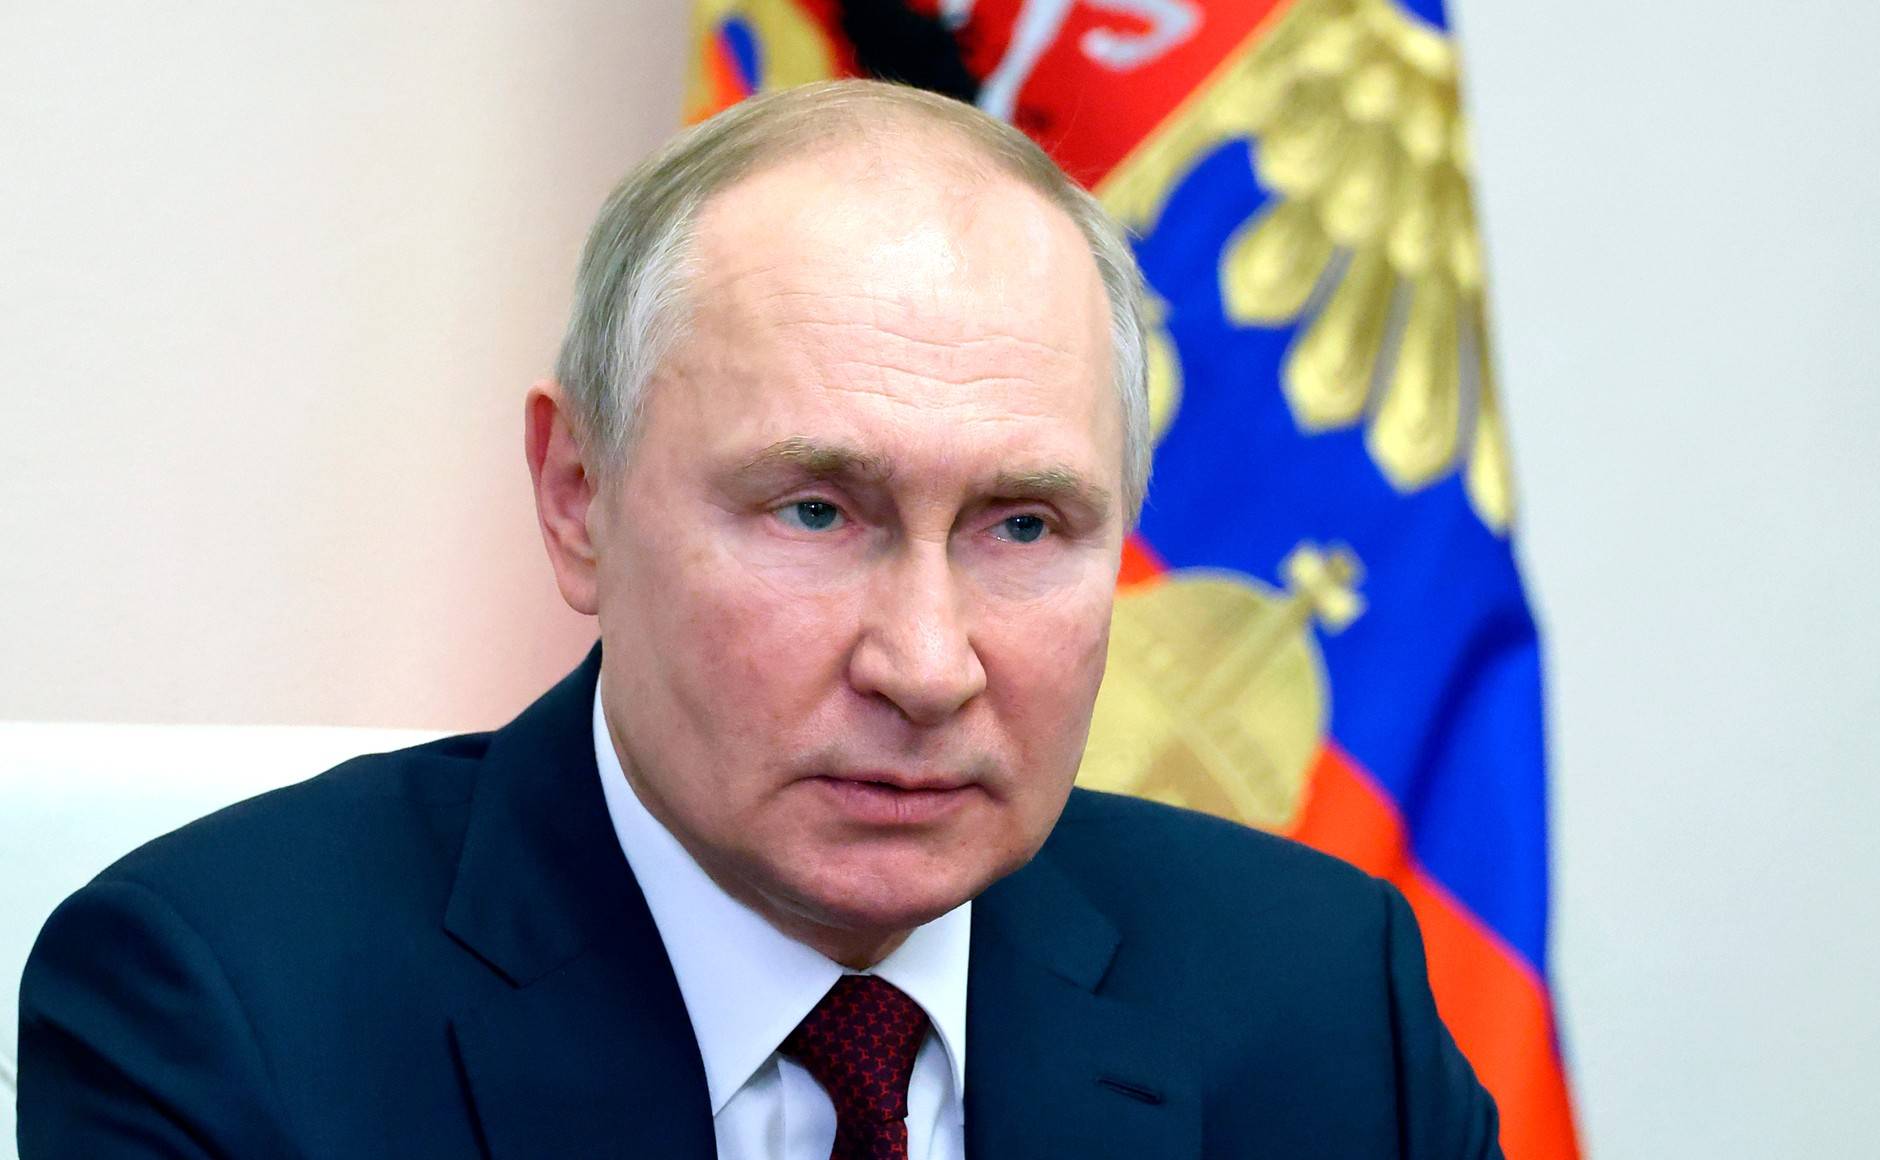 Putin bringt seine Atomtorpedos in Stellung! - Atomare Supertorpedos sollen bis Ende 2023 weltweit einsatzbereit sein!